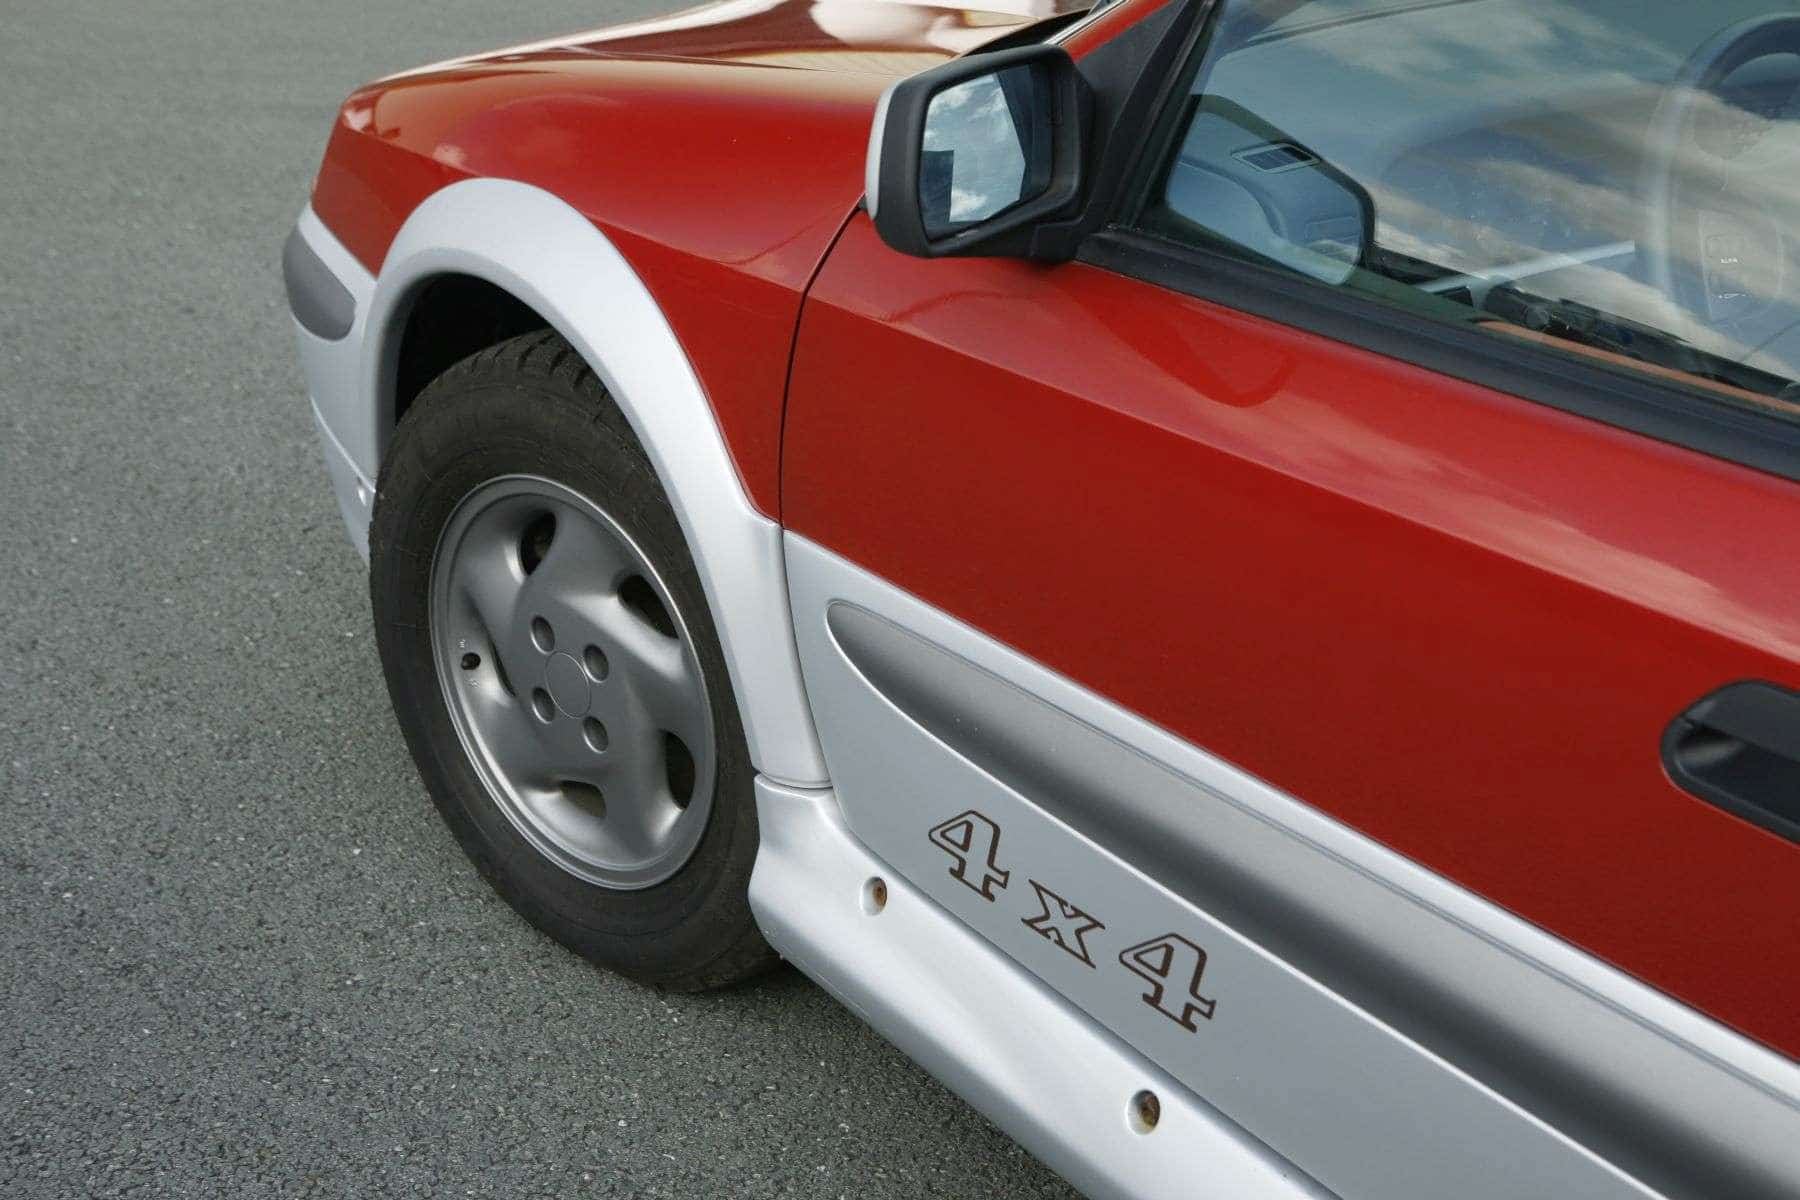 El Citröen 4x4 más aventurero con suspensión Hidractiva, un maletero infinito y colores heredados del Citroën 2 CV Spot